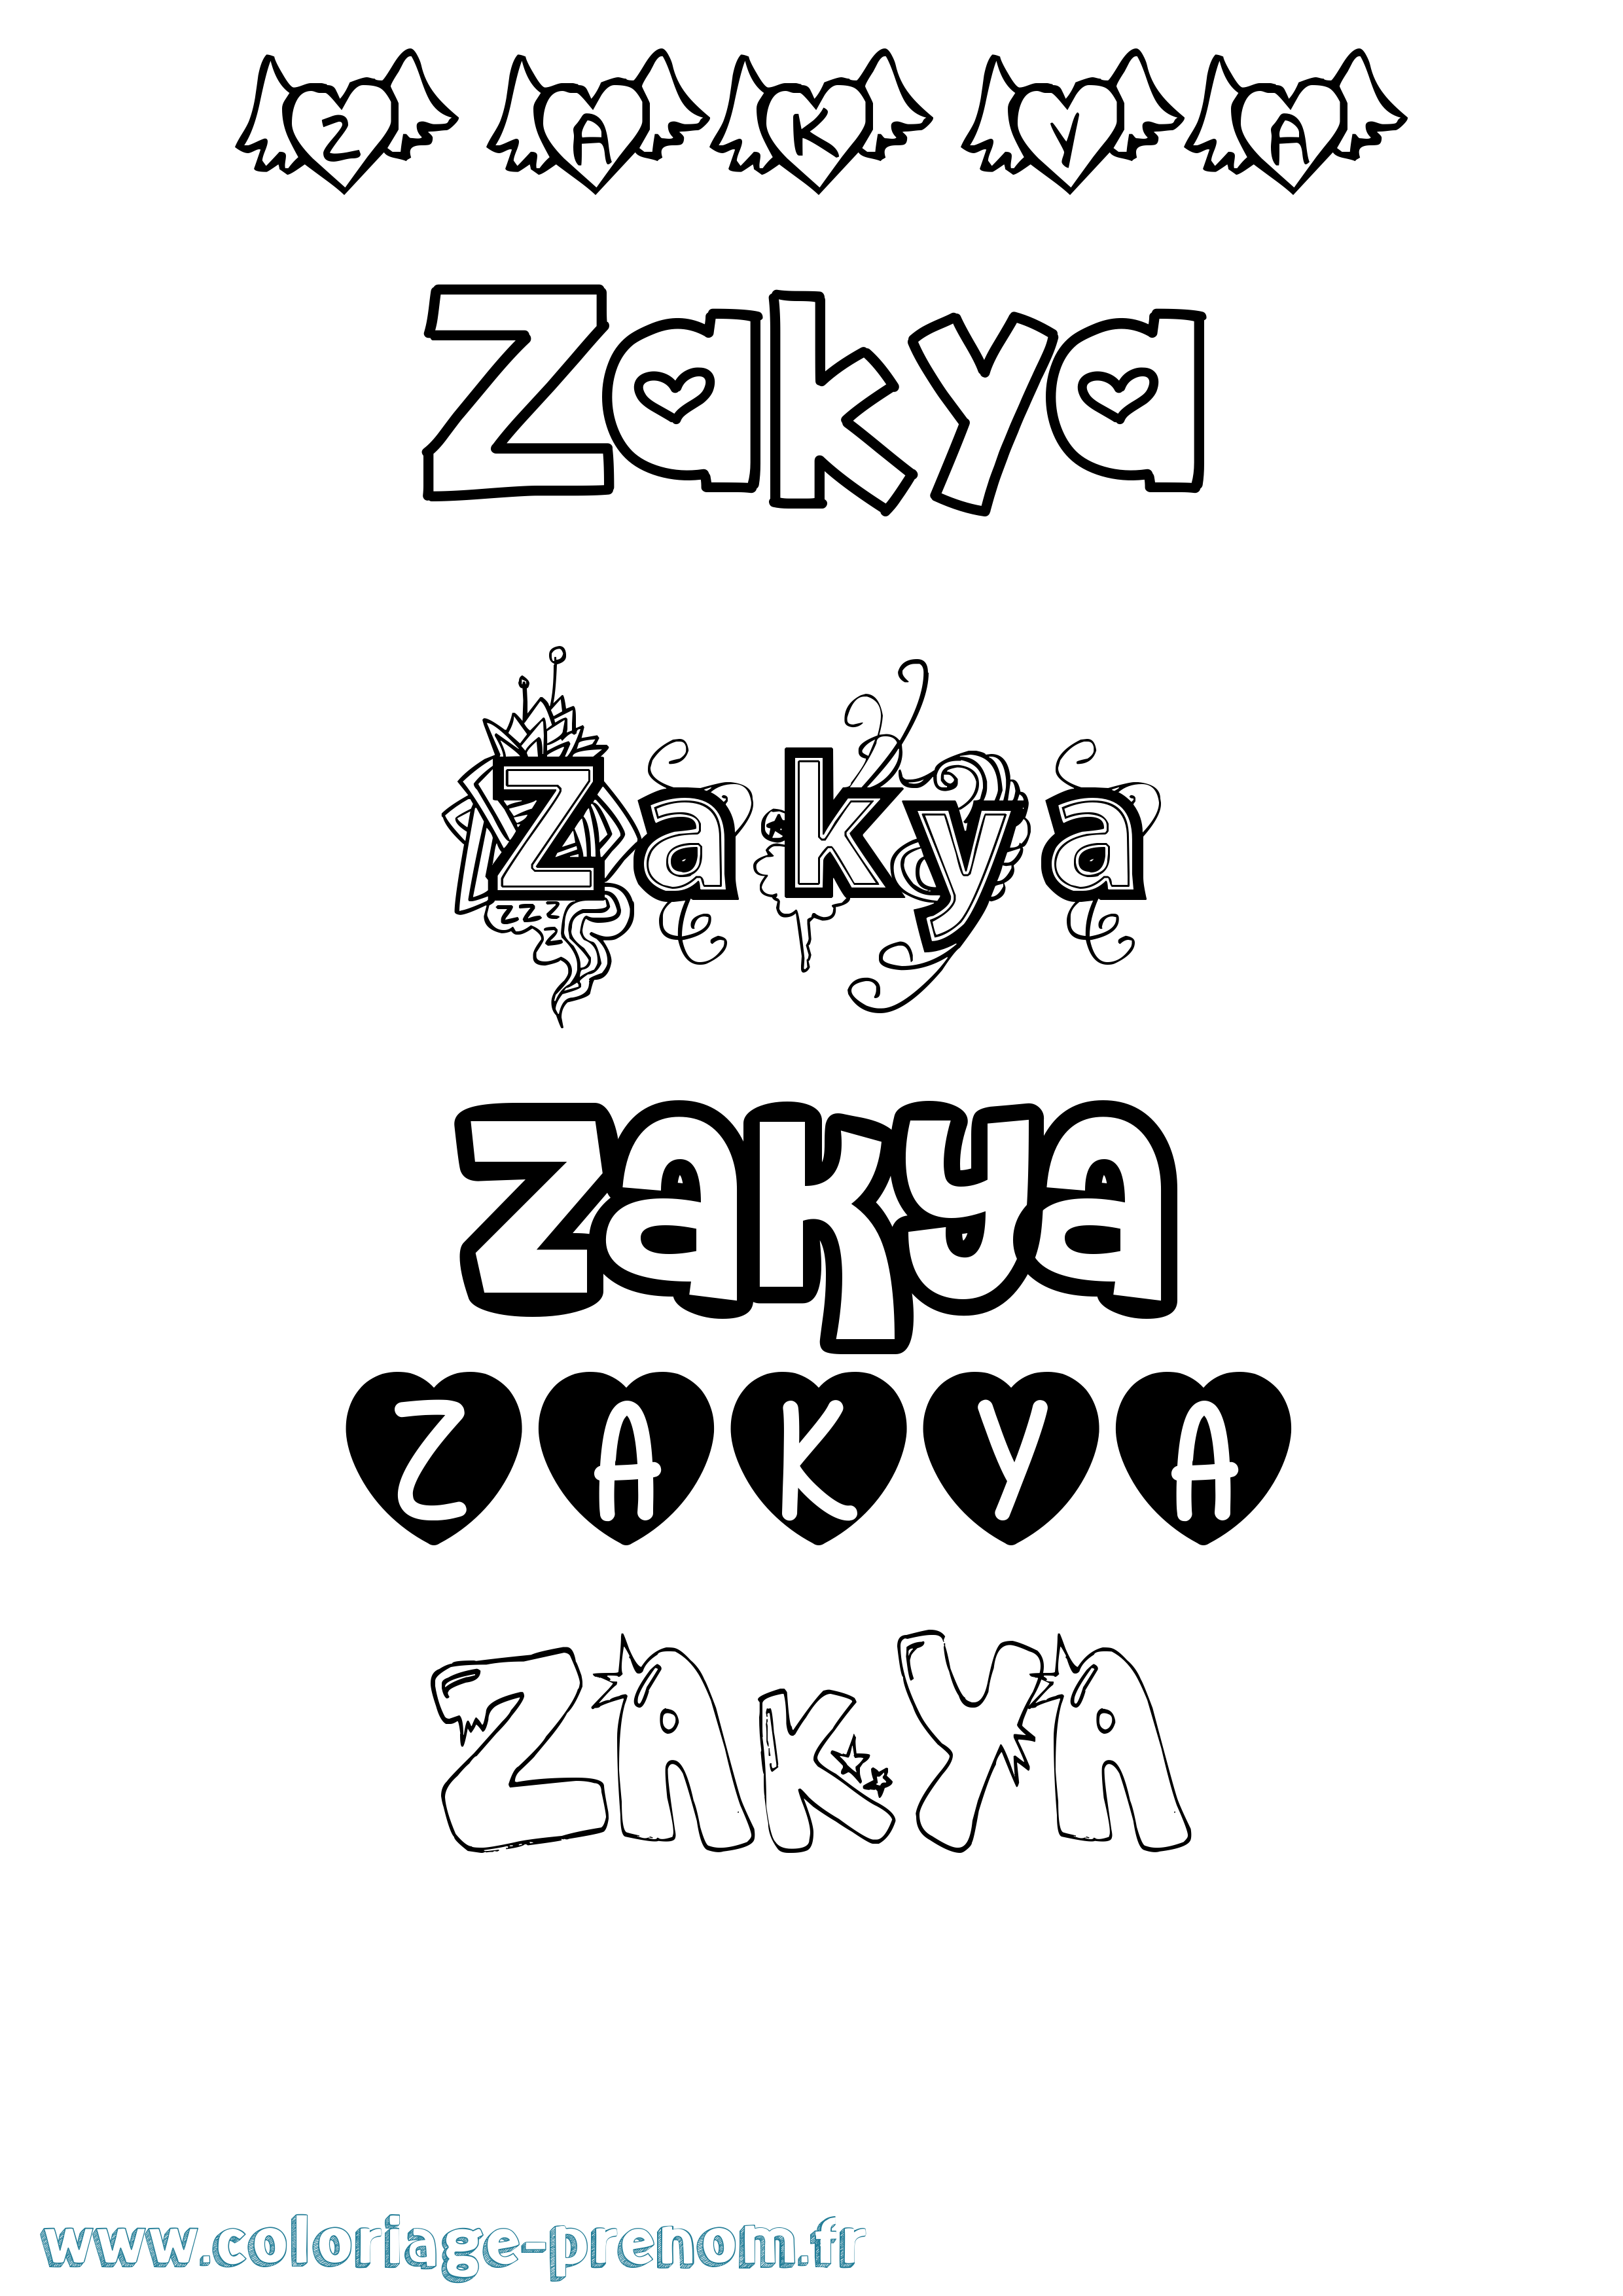 Coloriage prénom Zakya Girly